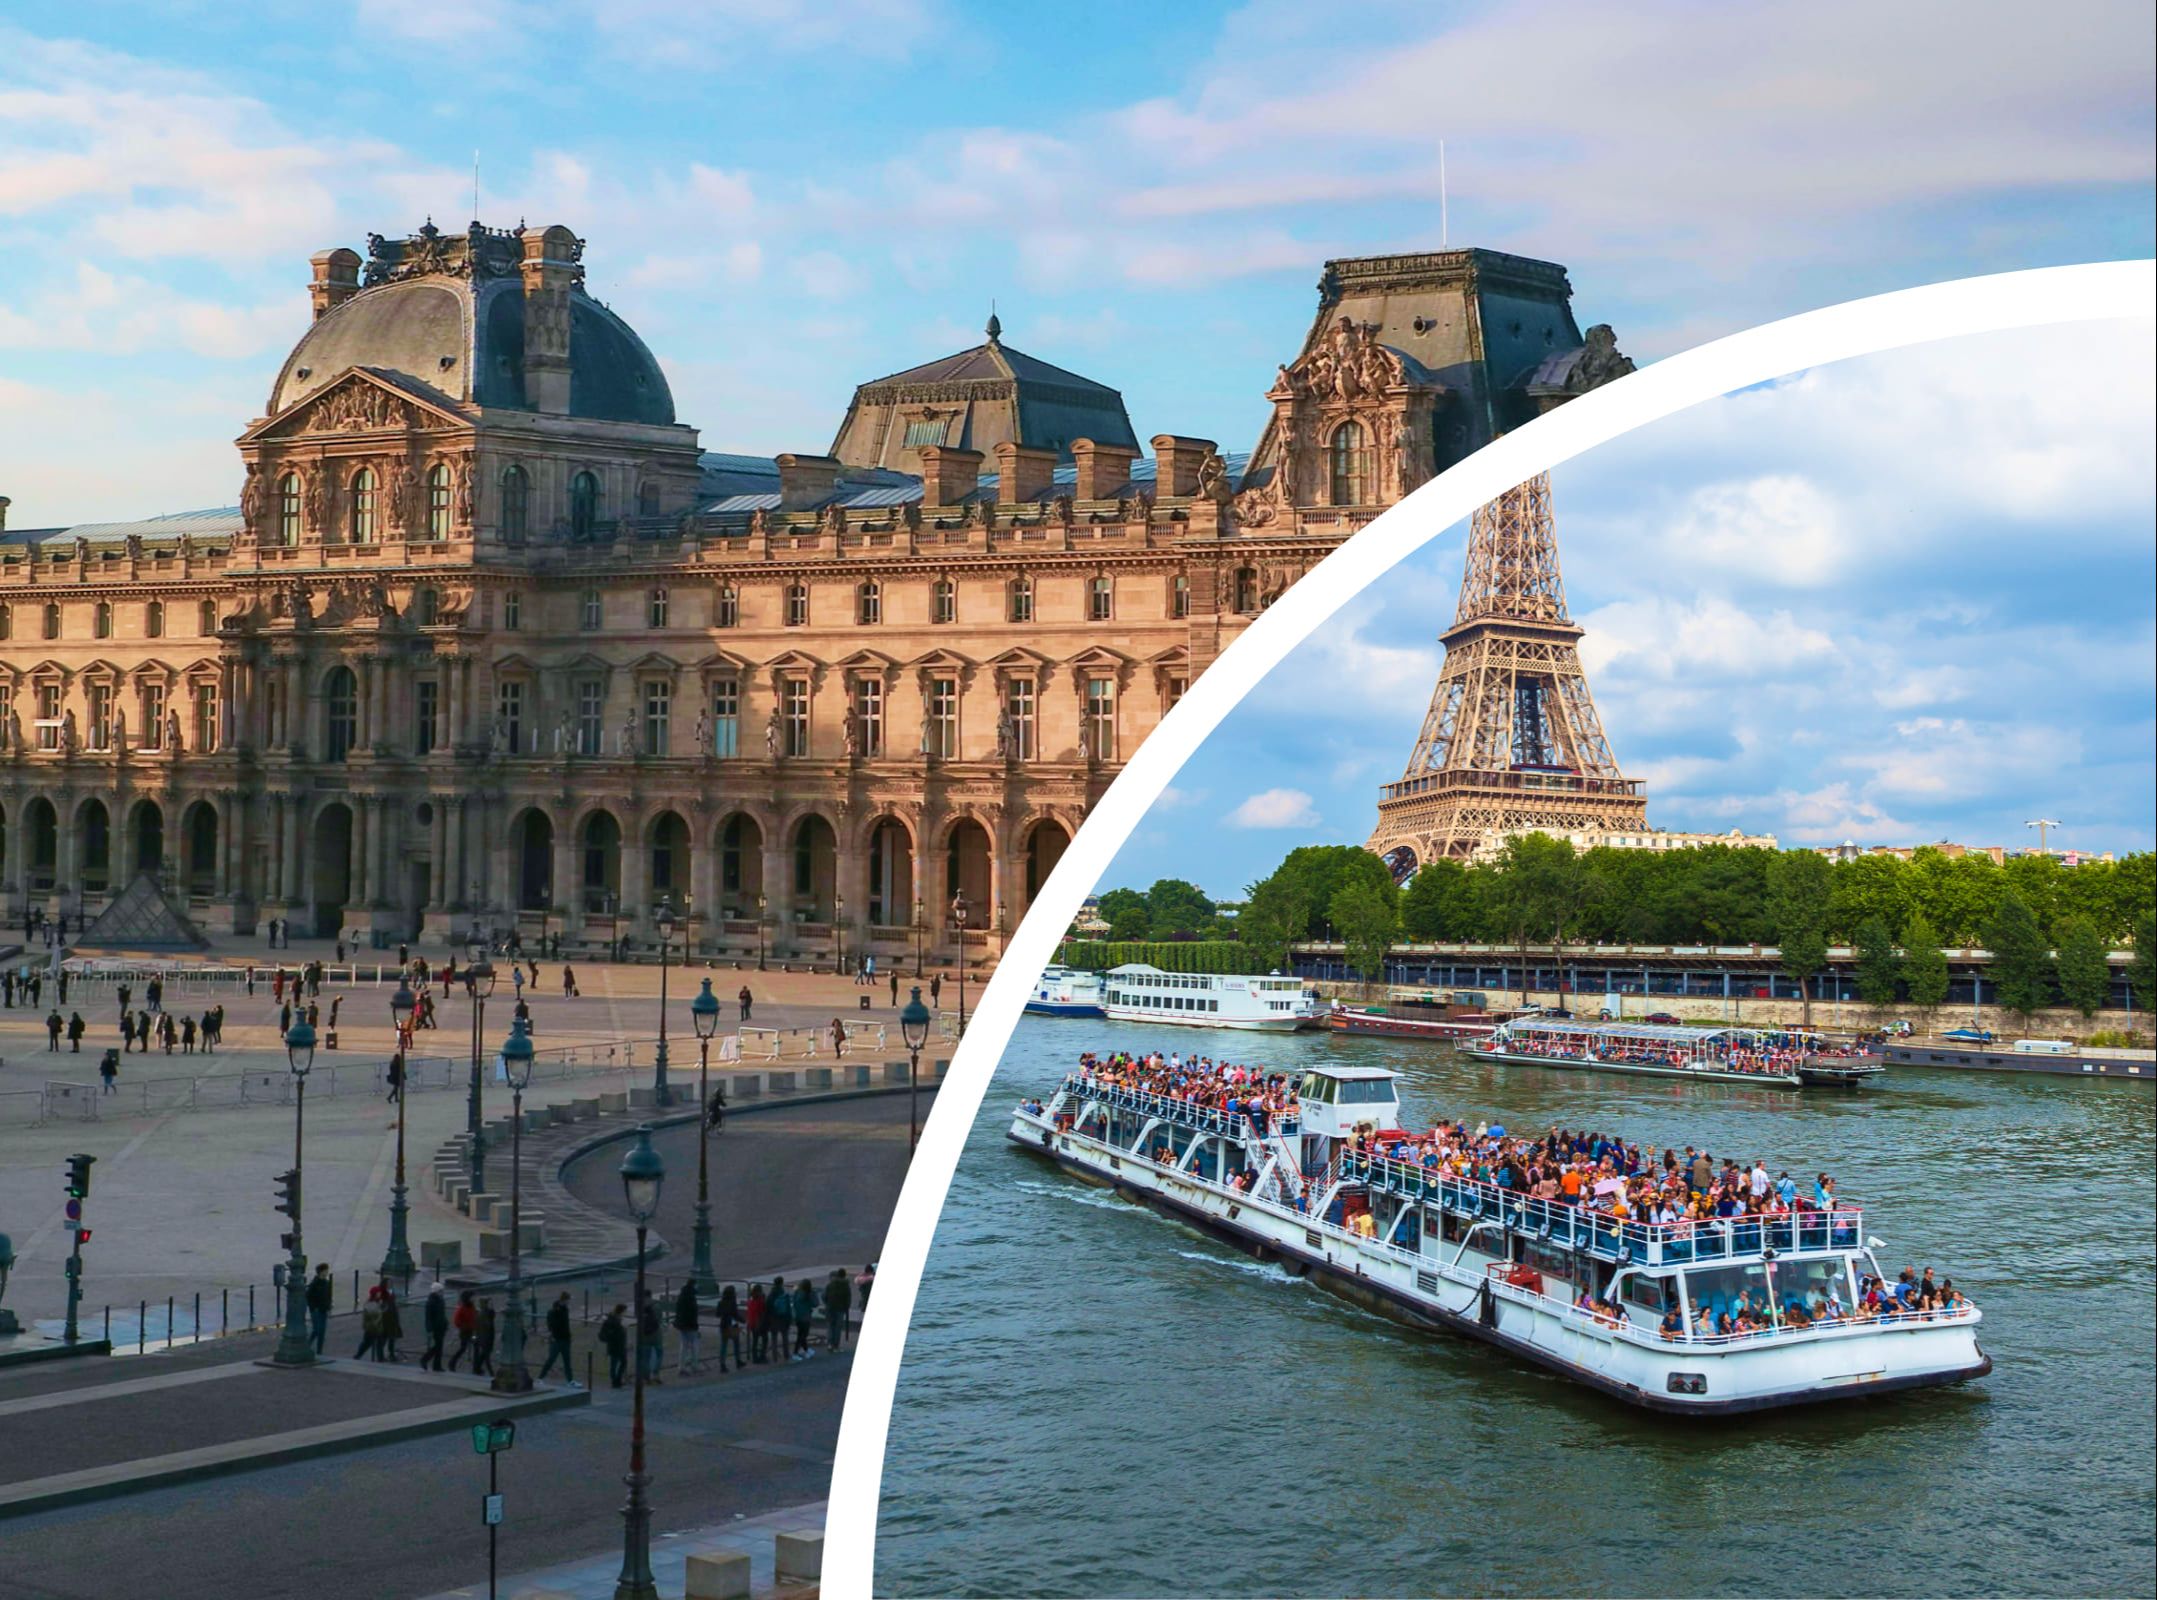 Accompagnement au musée du Louvre et à la Tour Eiffel (avec accès réservé ) et billet croisière